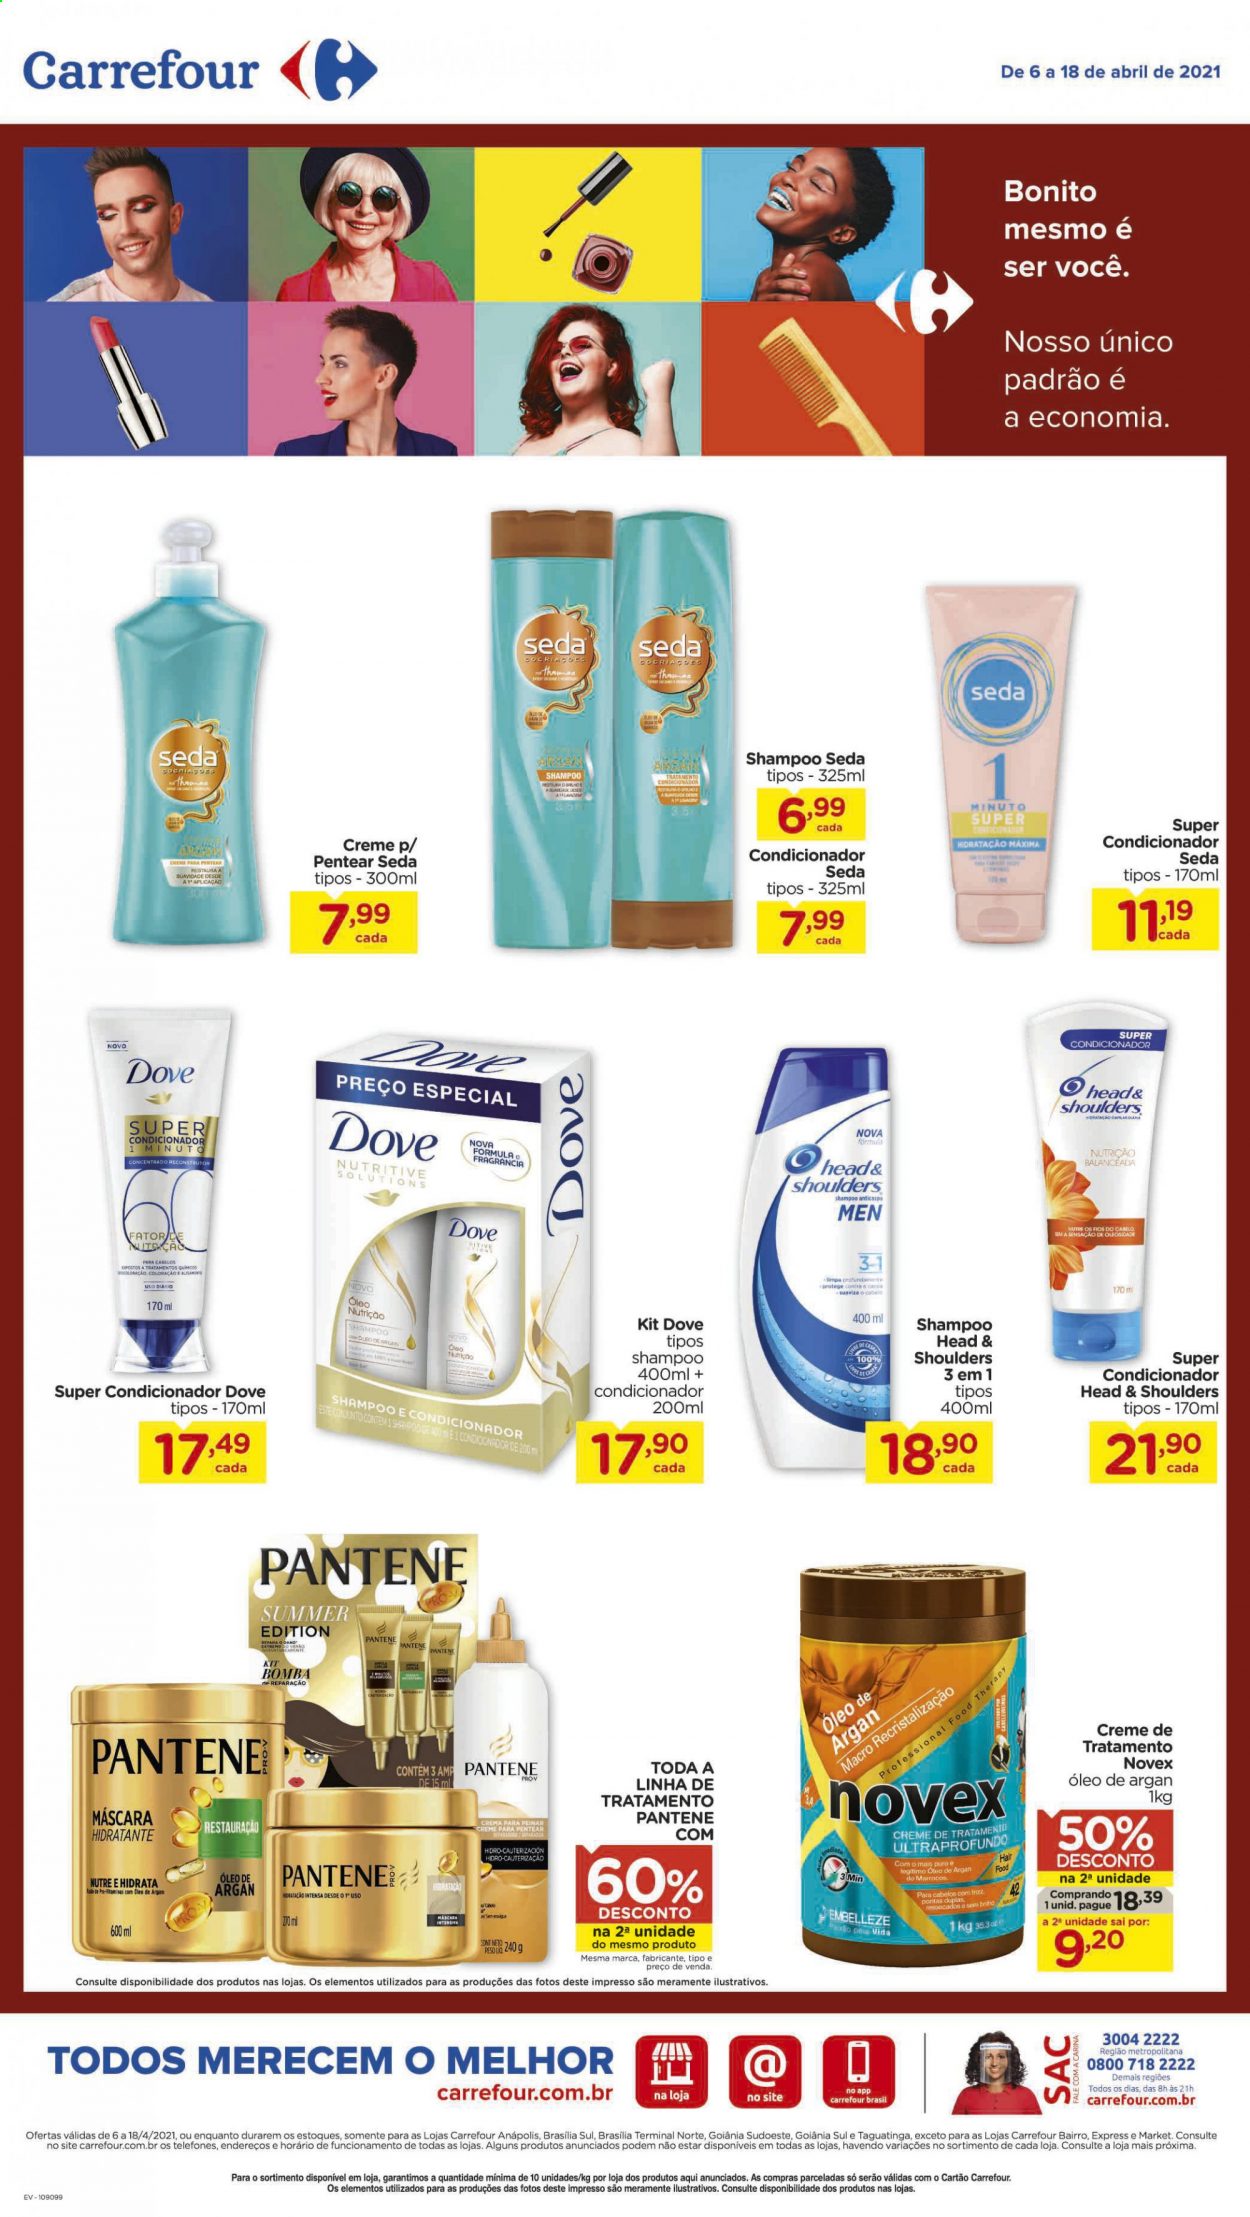 thumbnail - Folheto Carrefour Hiper - 06/04/2021 - 18/04/2021 - Produtos em promoção - shampoo, Head & Shoulders, Dove, Pantene, shampoo e condicionador, máscara. Página 3.